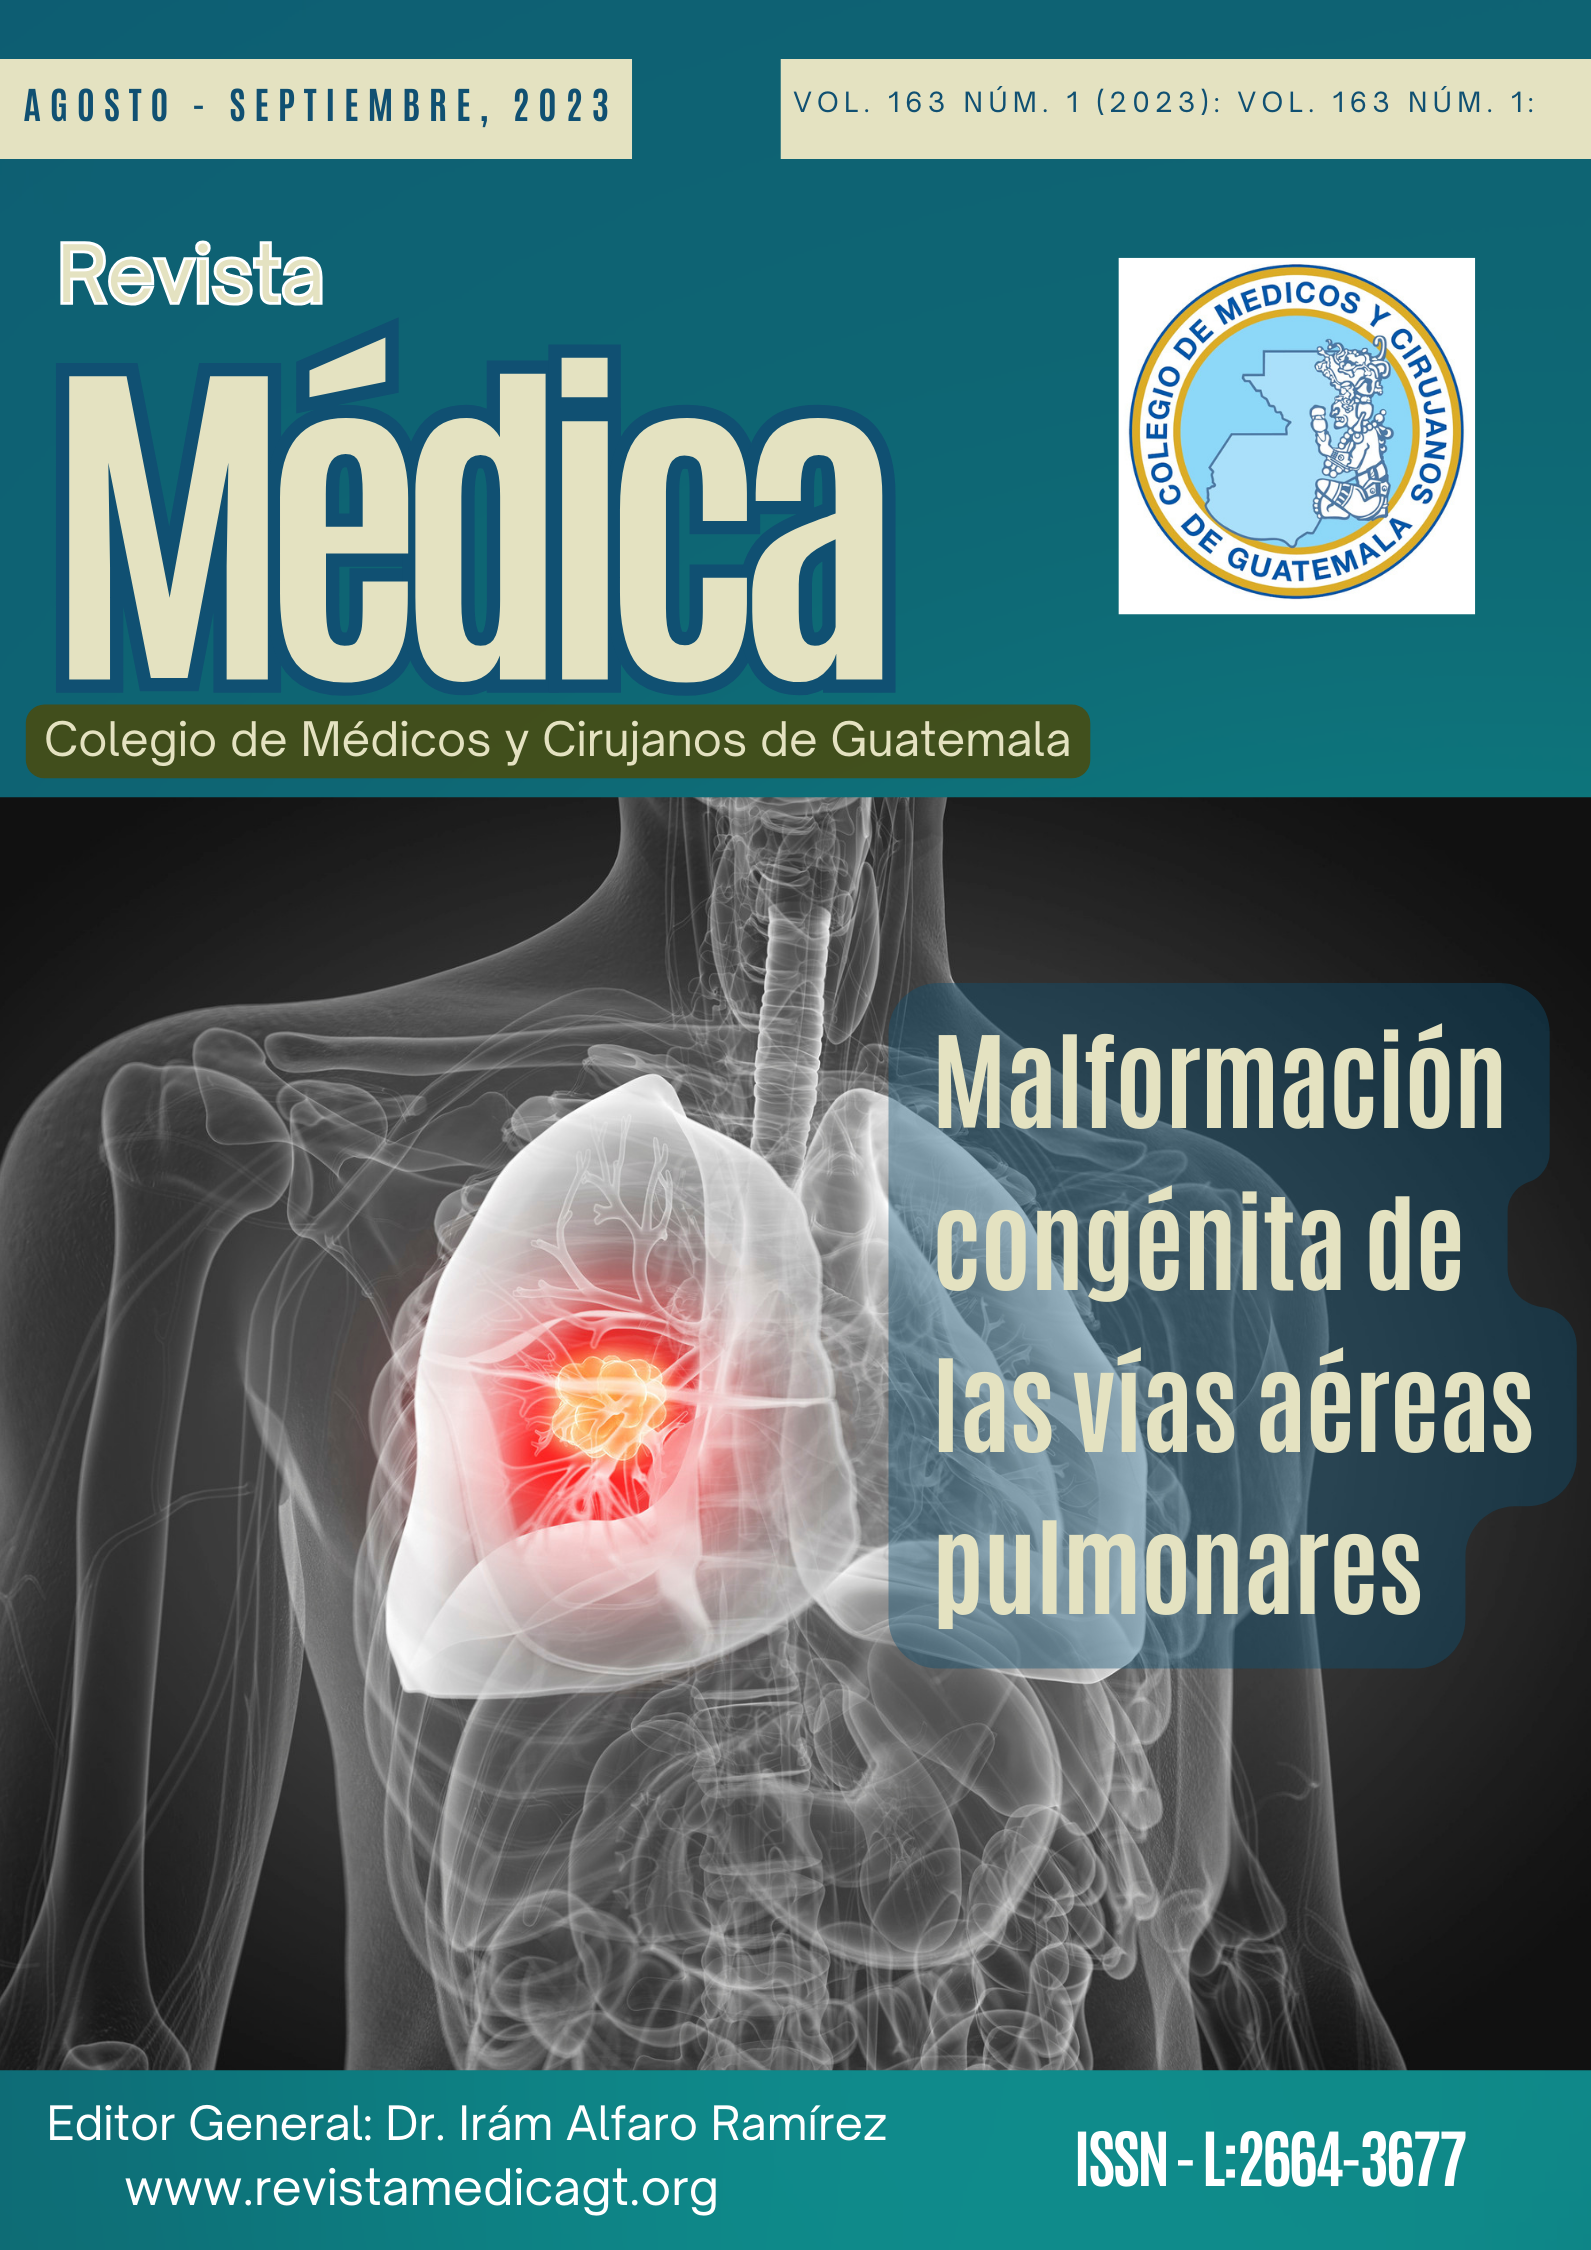 La Malformación Congénita de las Vías Aéreas Pulmonares es una rara anomalía del desarrollo del tracto respiratorio inferior.